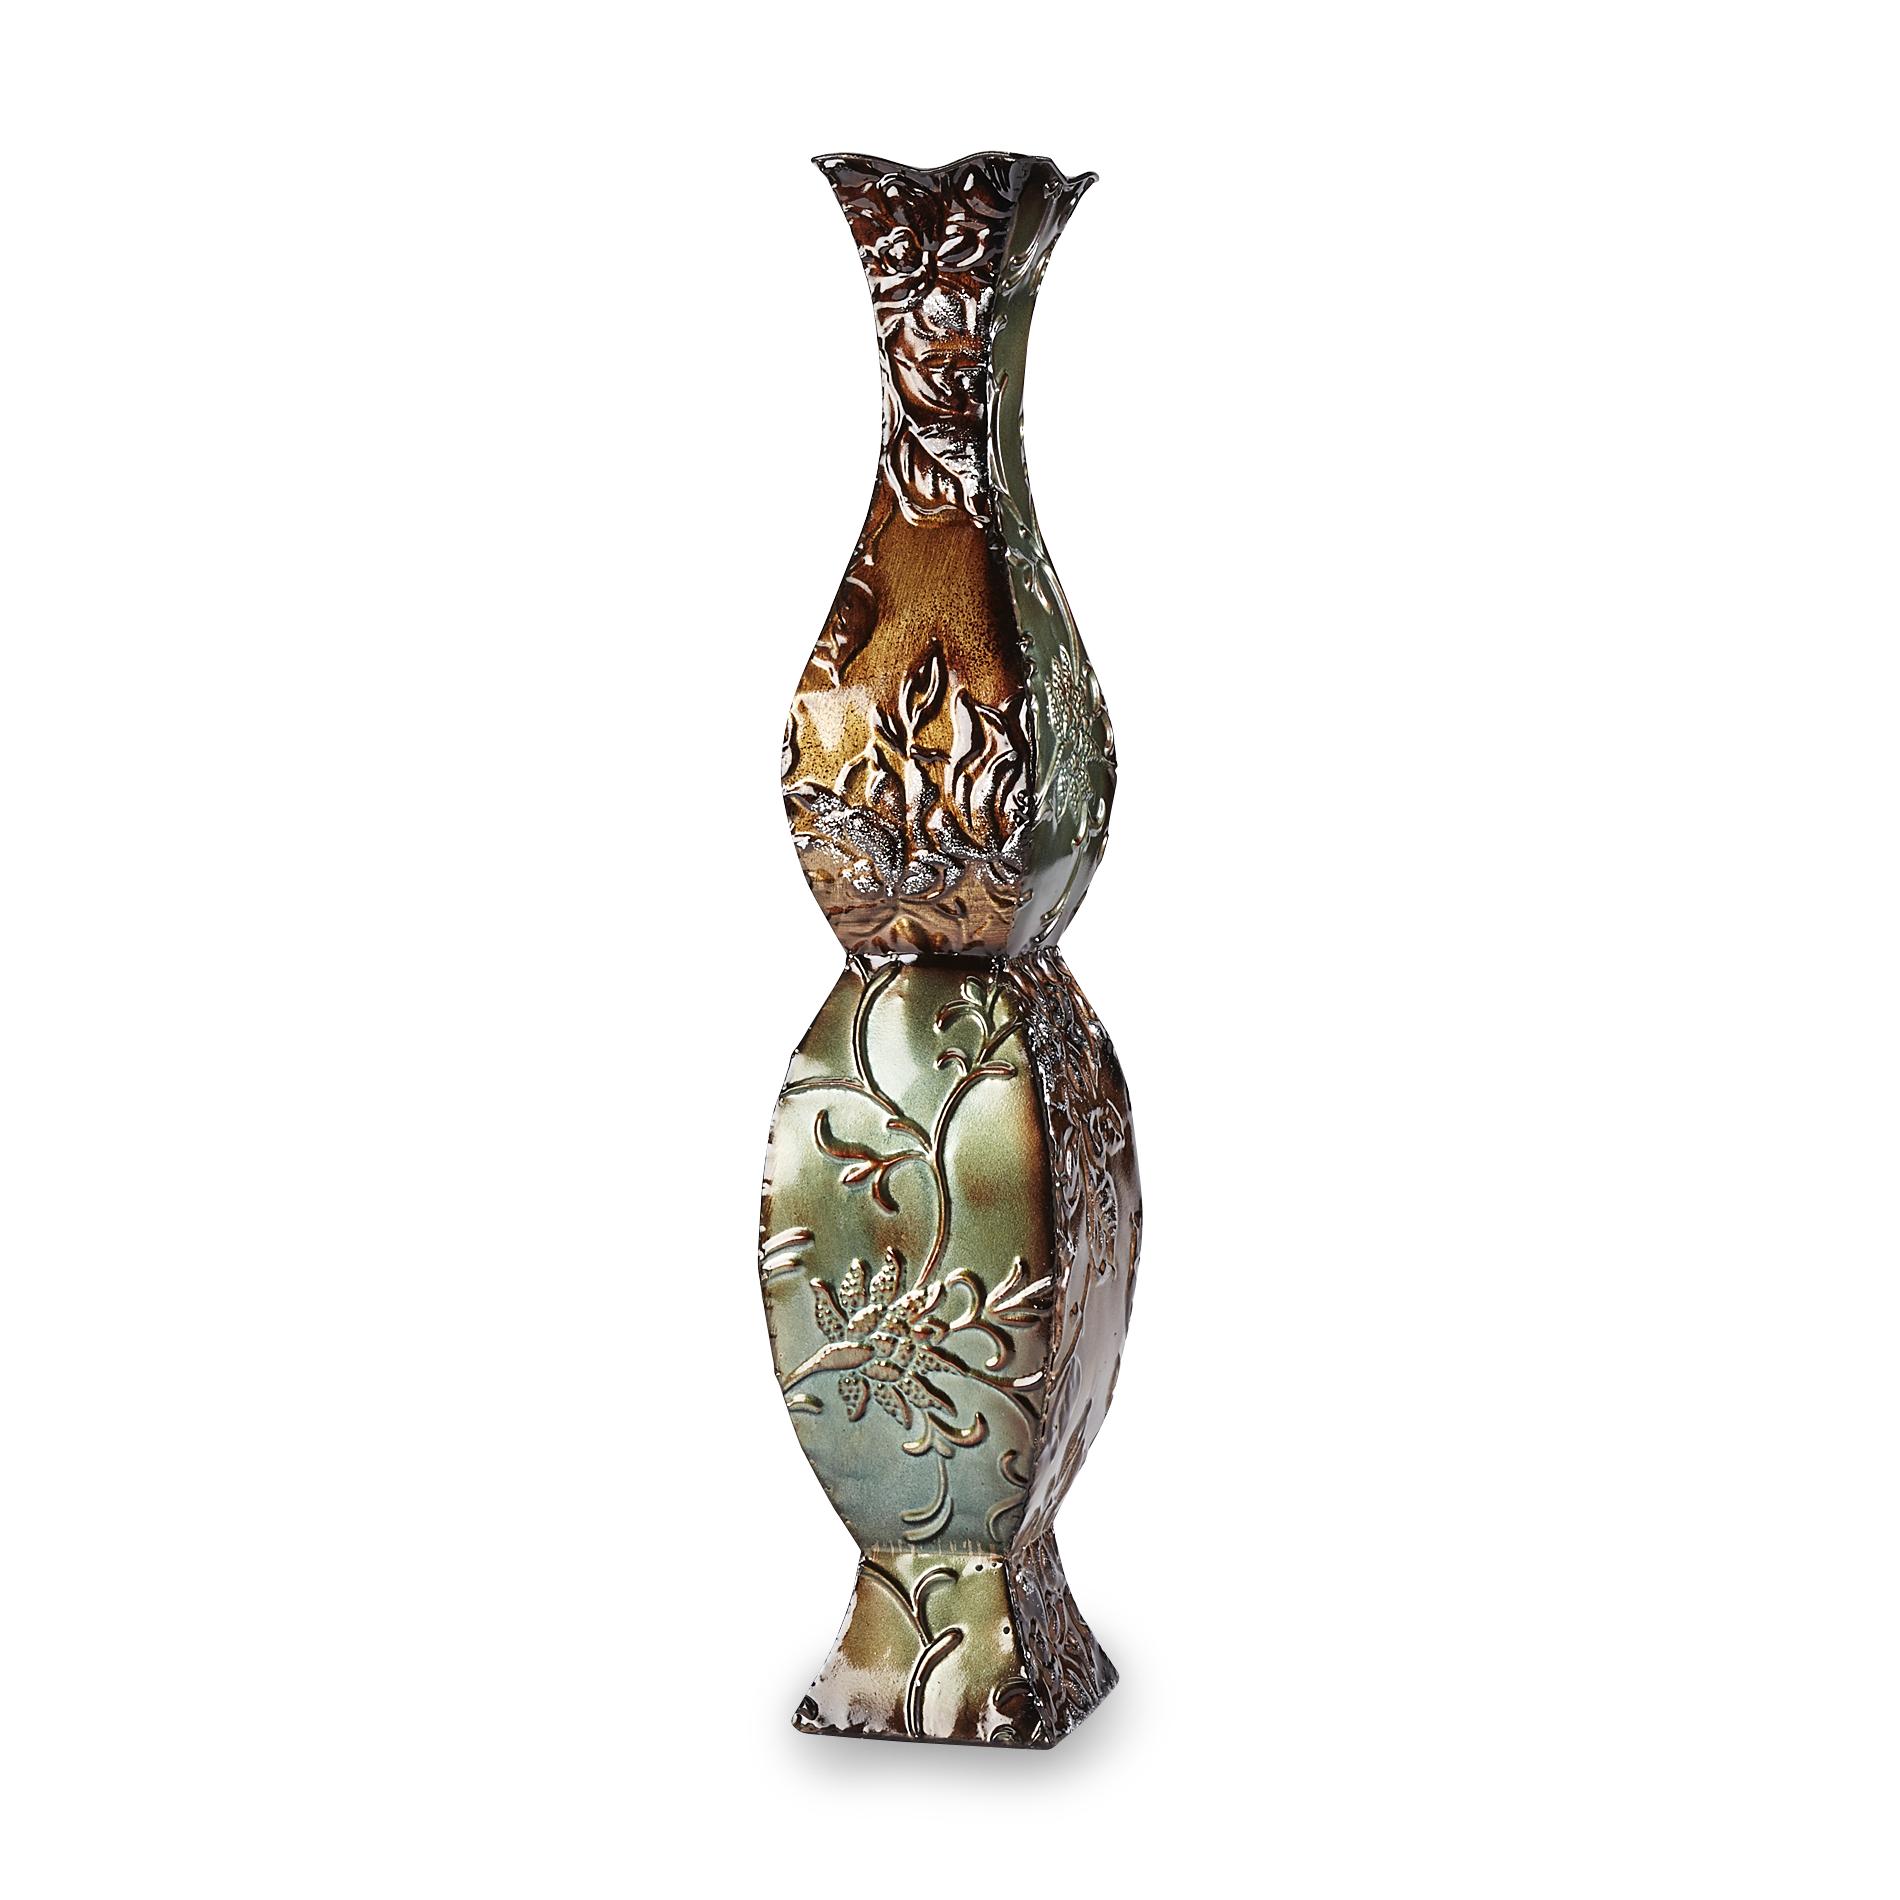 Elements 24" Decorative Vase - Floral